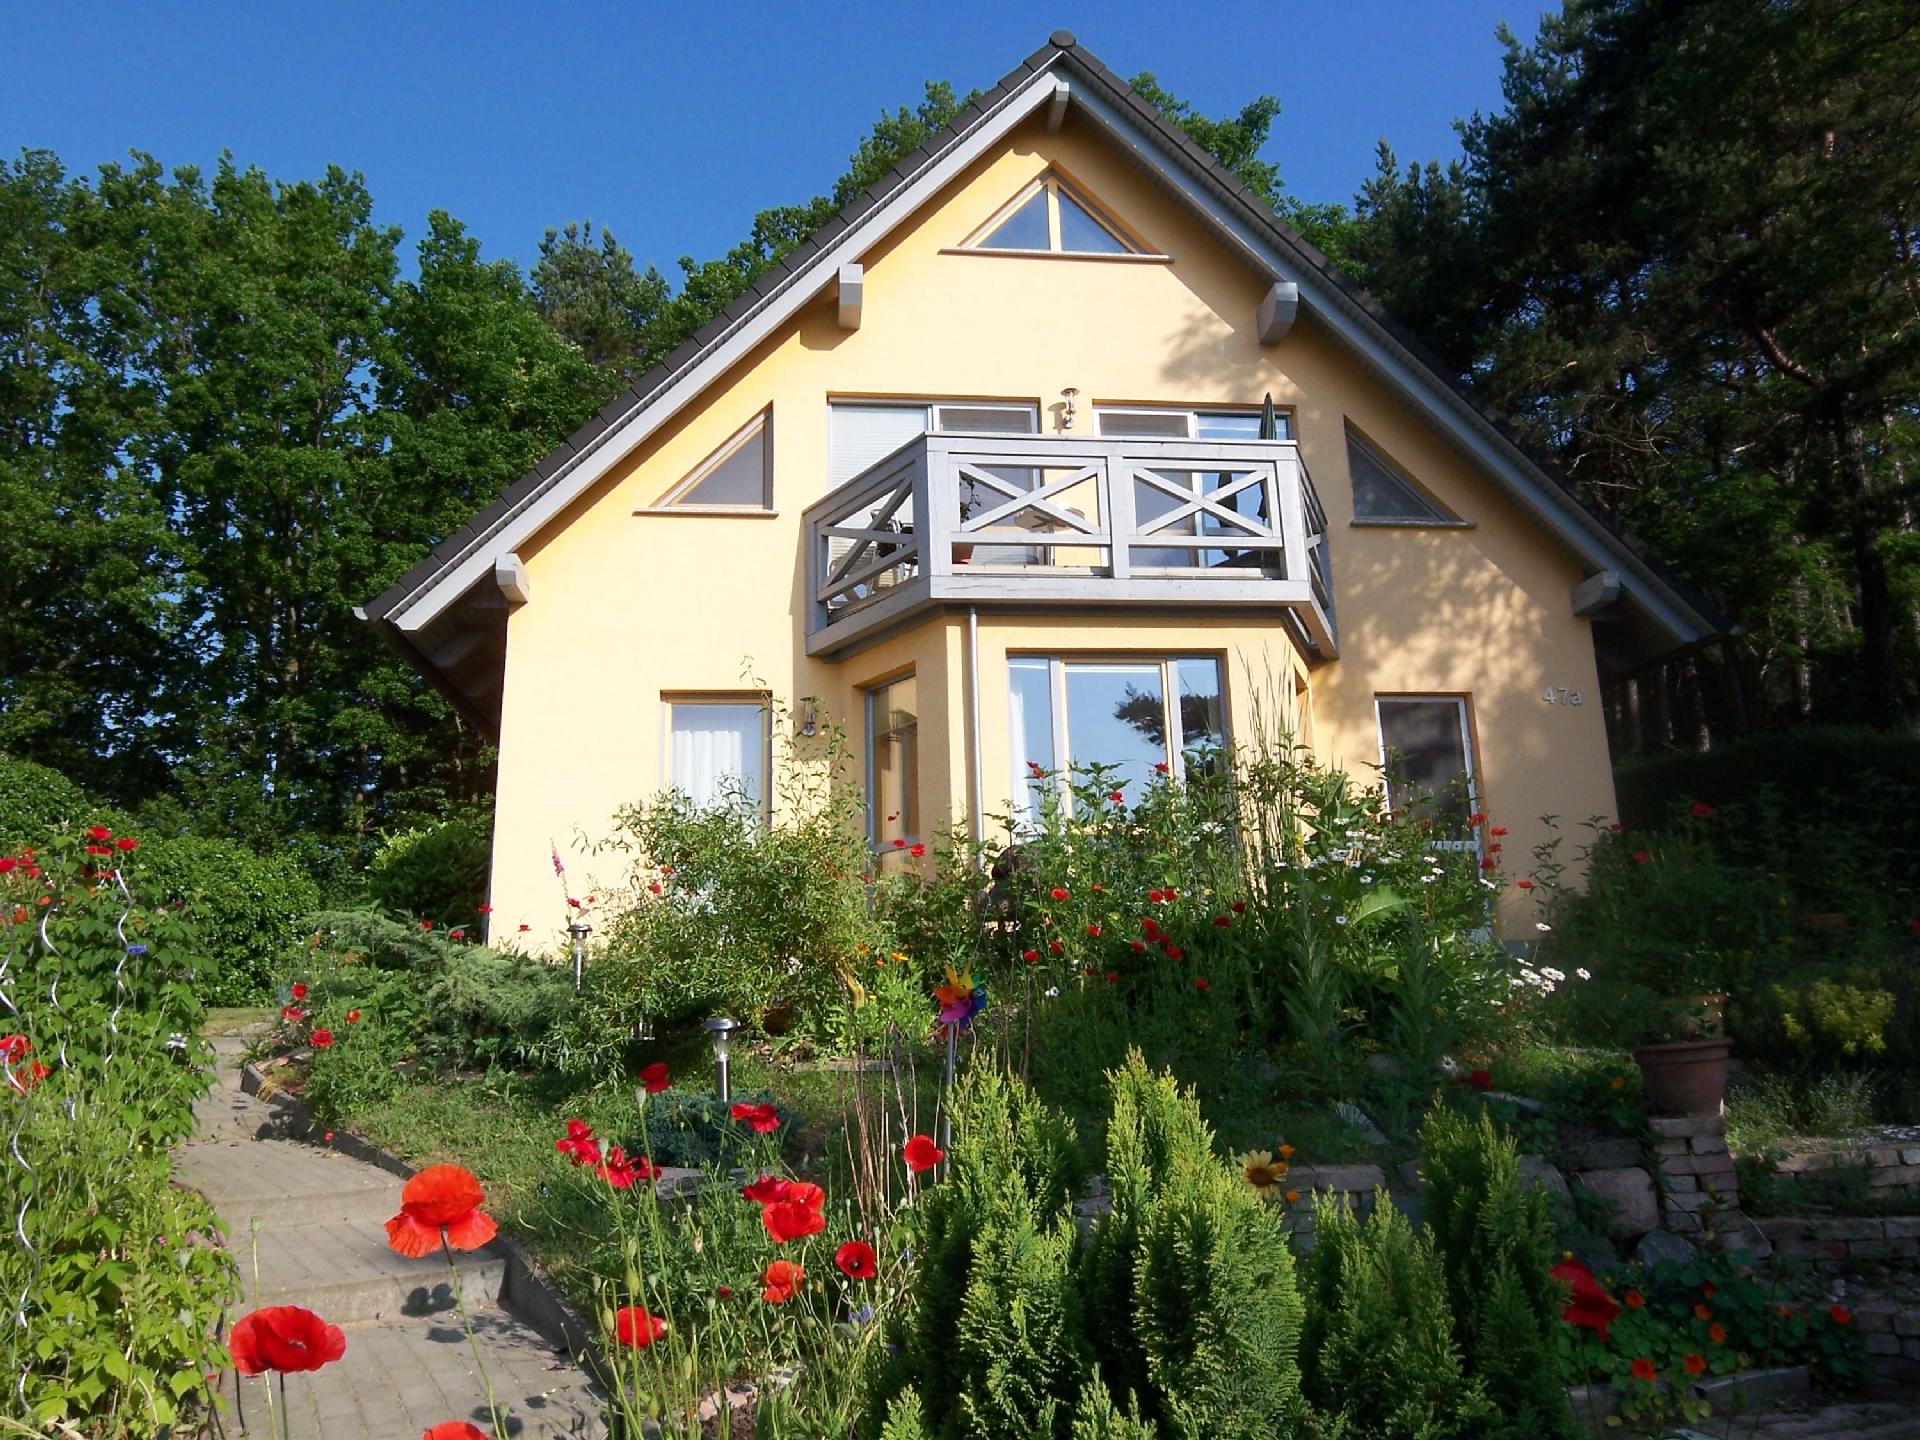 Ferienwohnung in ruhiger Lage, mit Garten und Terr Ferienhaus in Deutschland